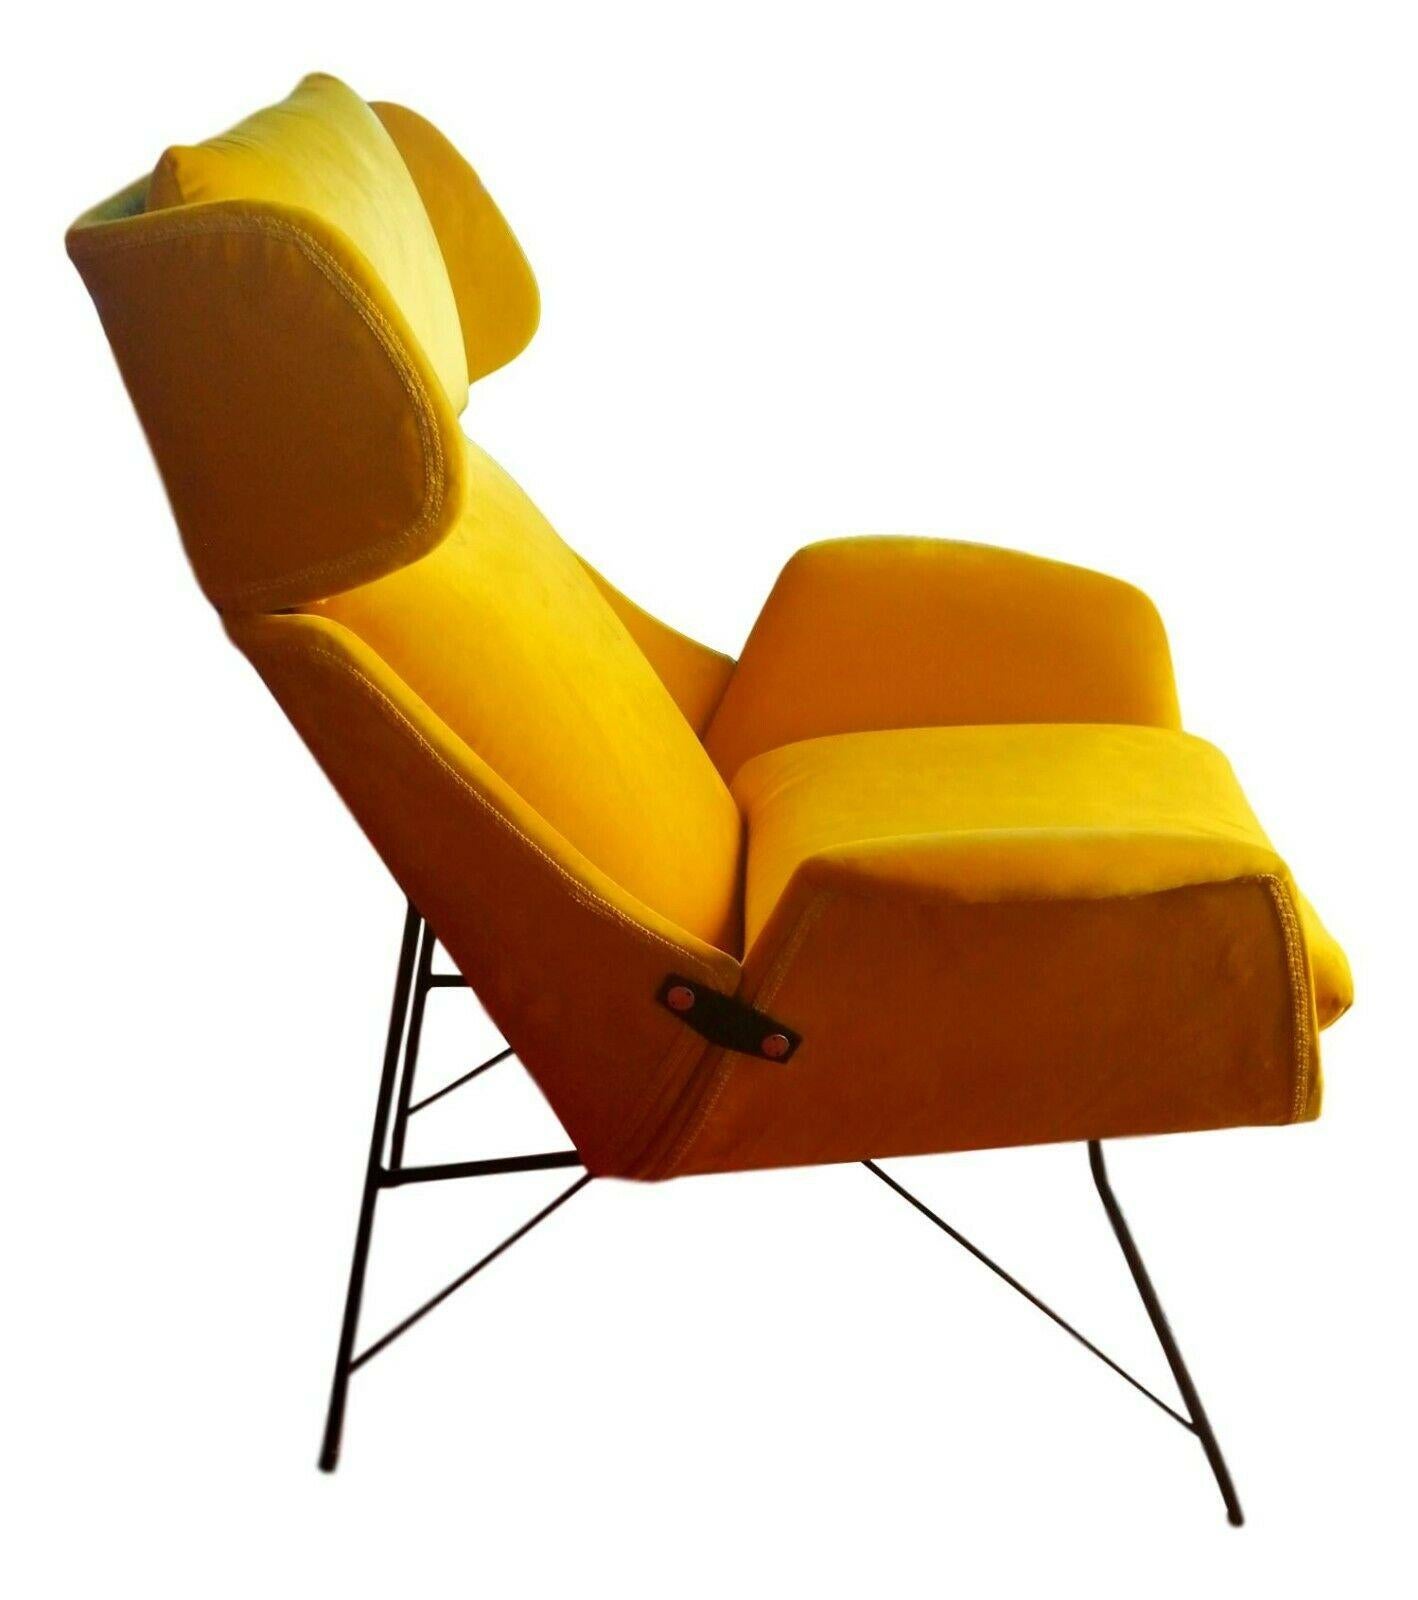 rare et splendide fauteuil conçu par Augusto Bozzi pour saporiti, au début des années 1950.

structure en contreplaqué incurvée en trois sections sur une structure en métal laqué noir

rembourrage et coussins en mousse, revêtement en velours